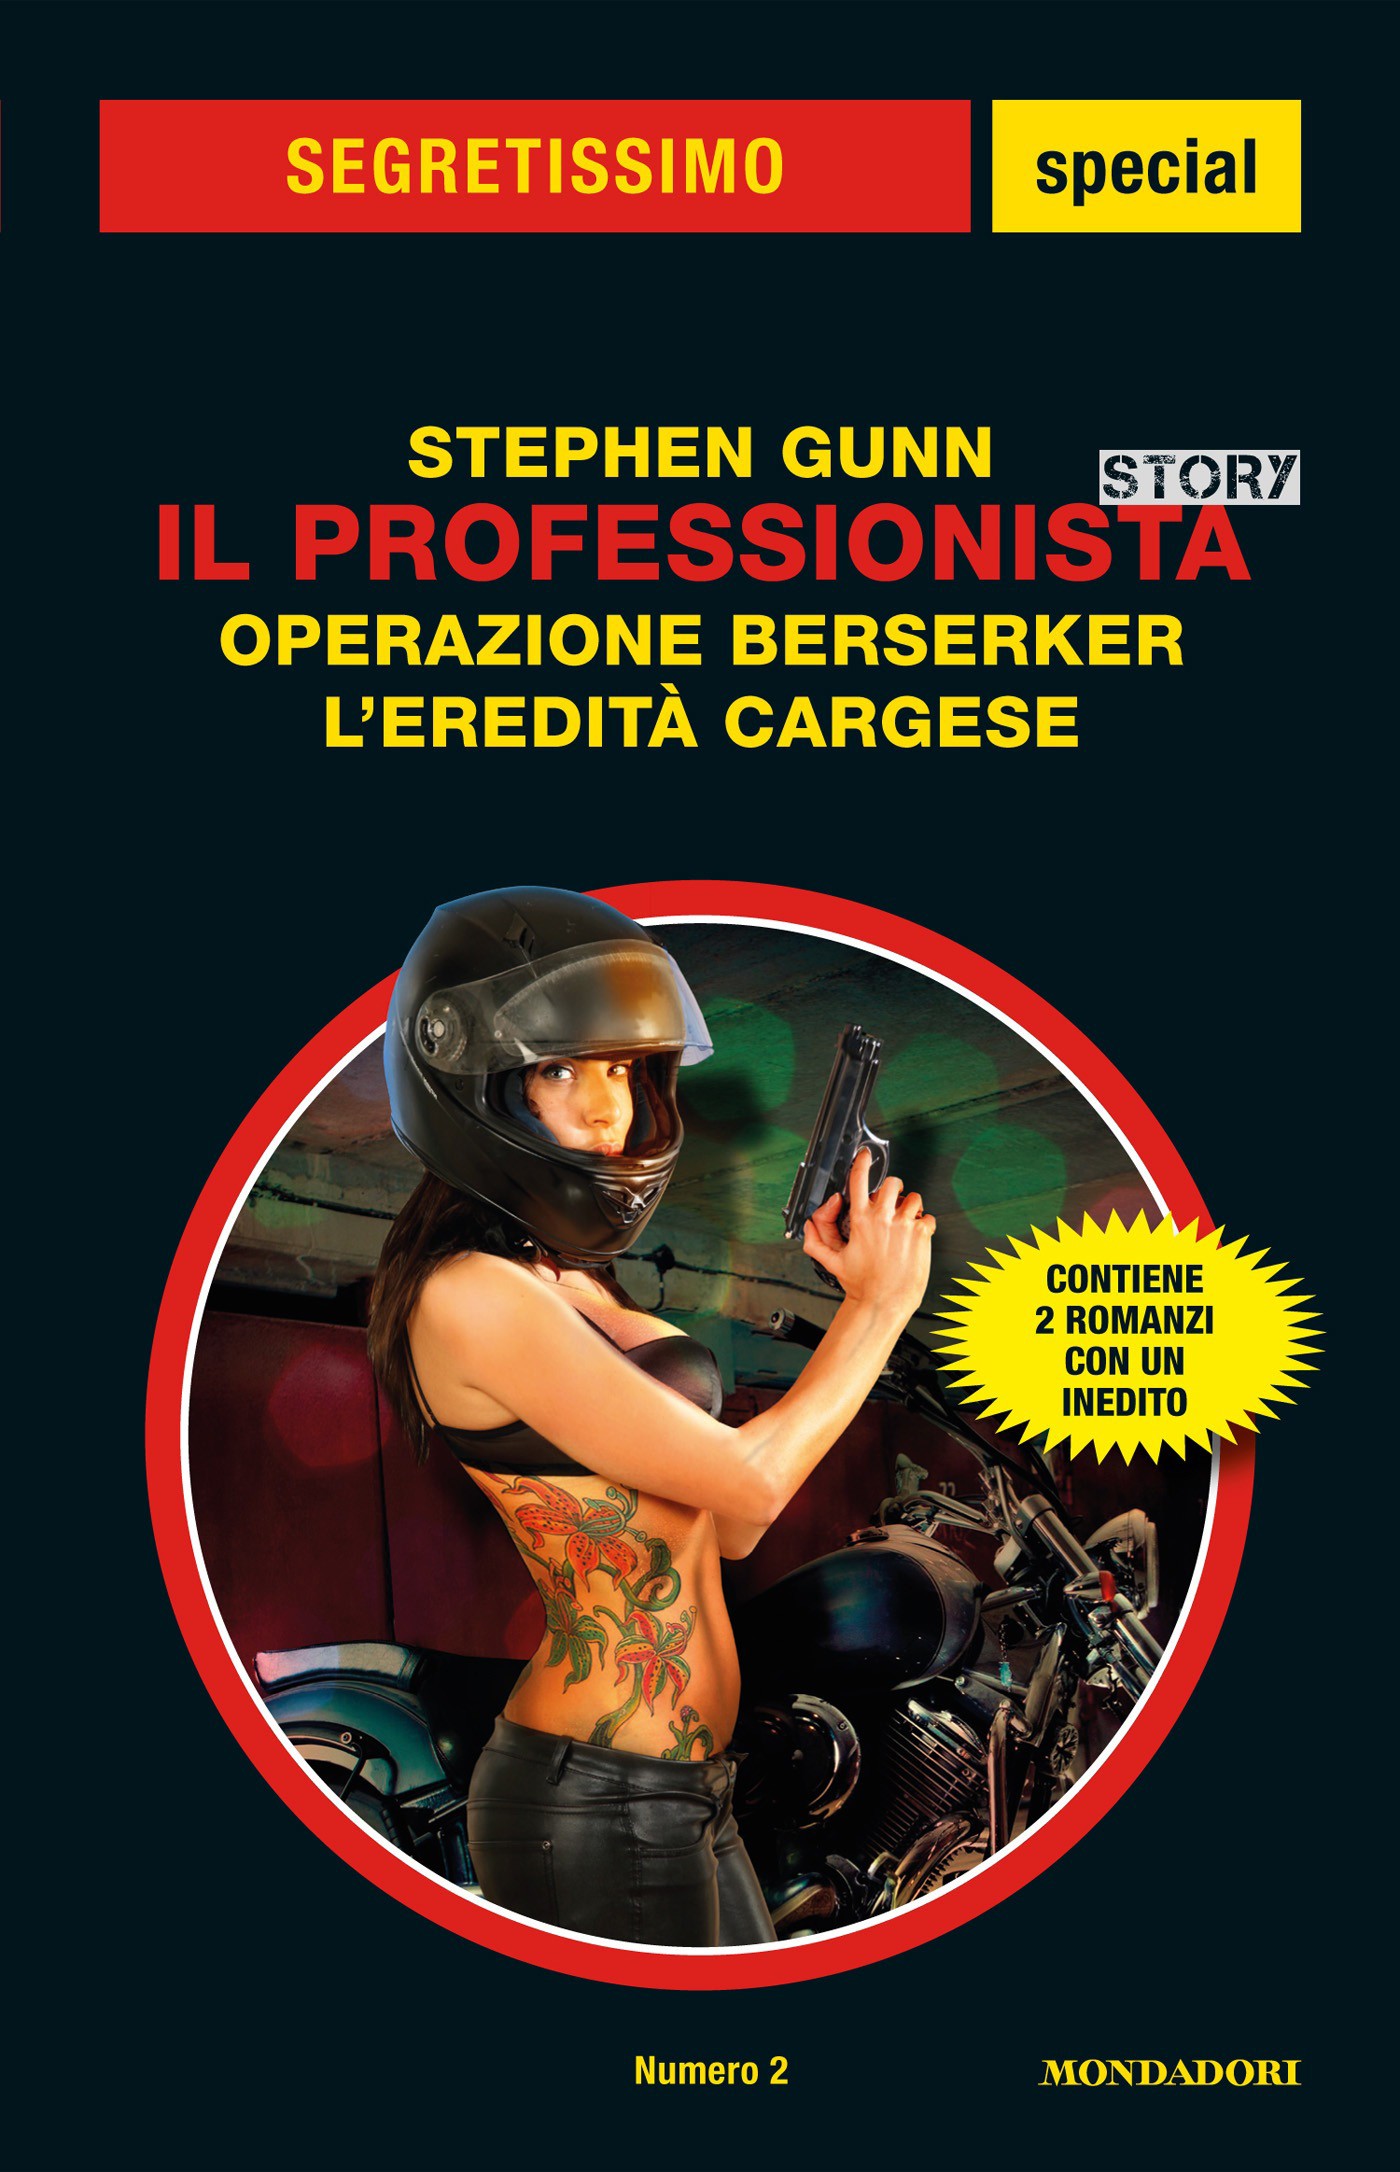 Il Professionista Story: Operazione Berserker - L'eredità Cargese (Segretissimo) - Librerie.coop